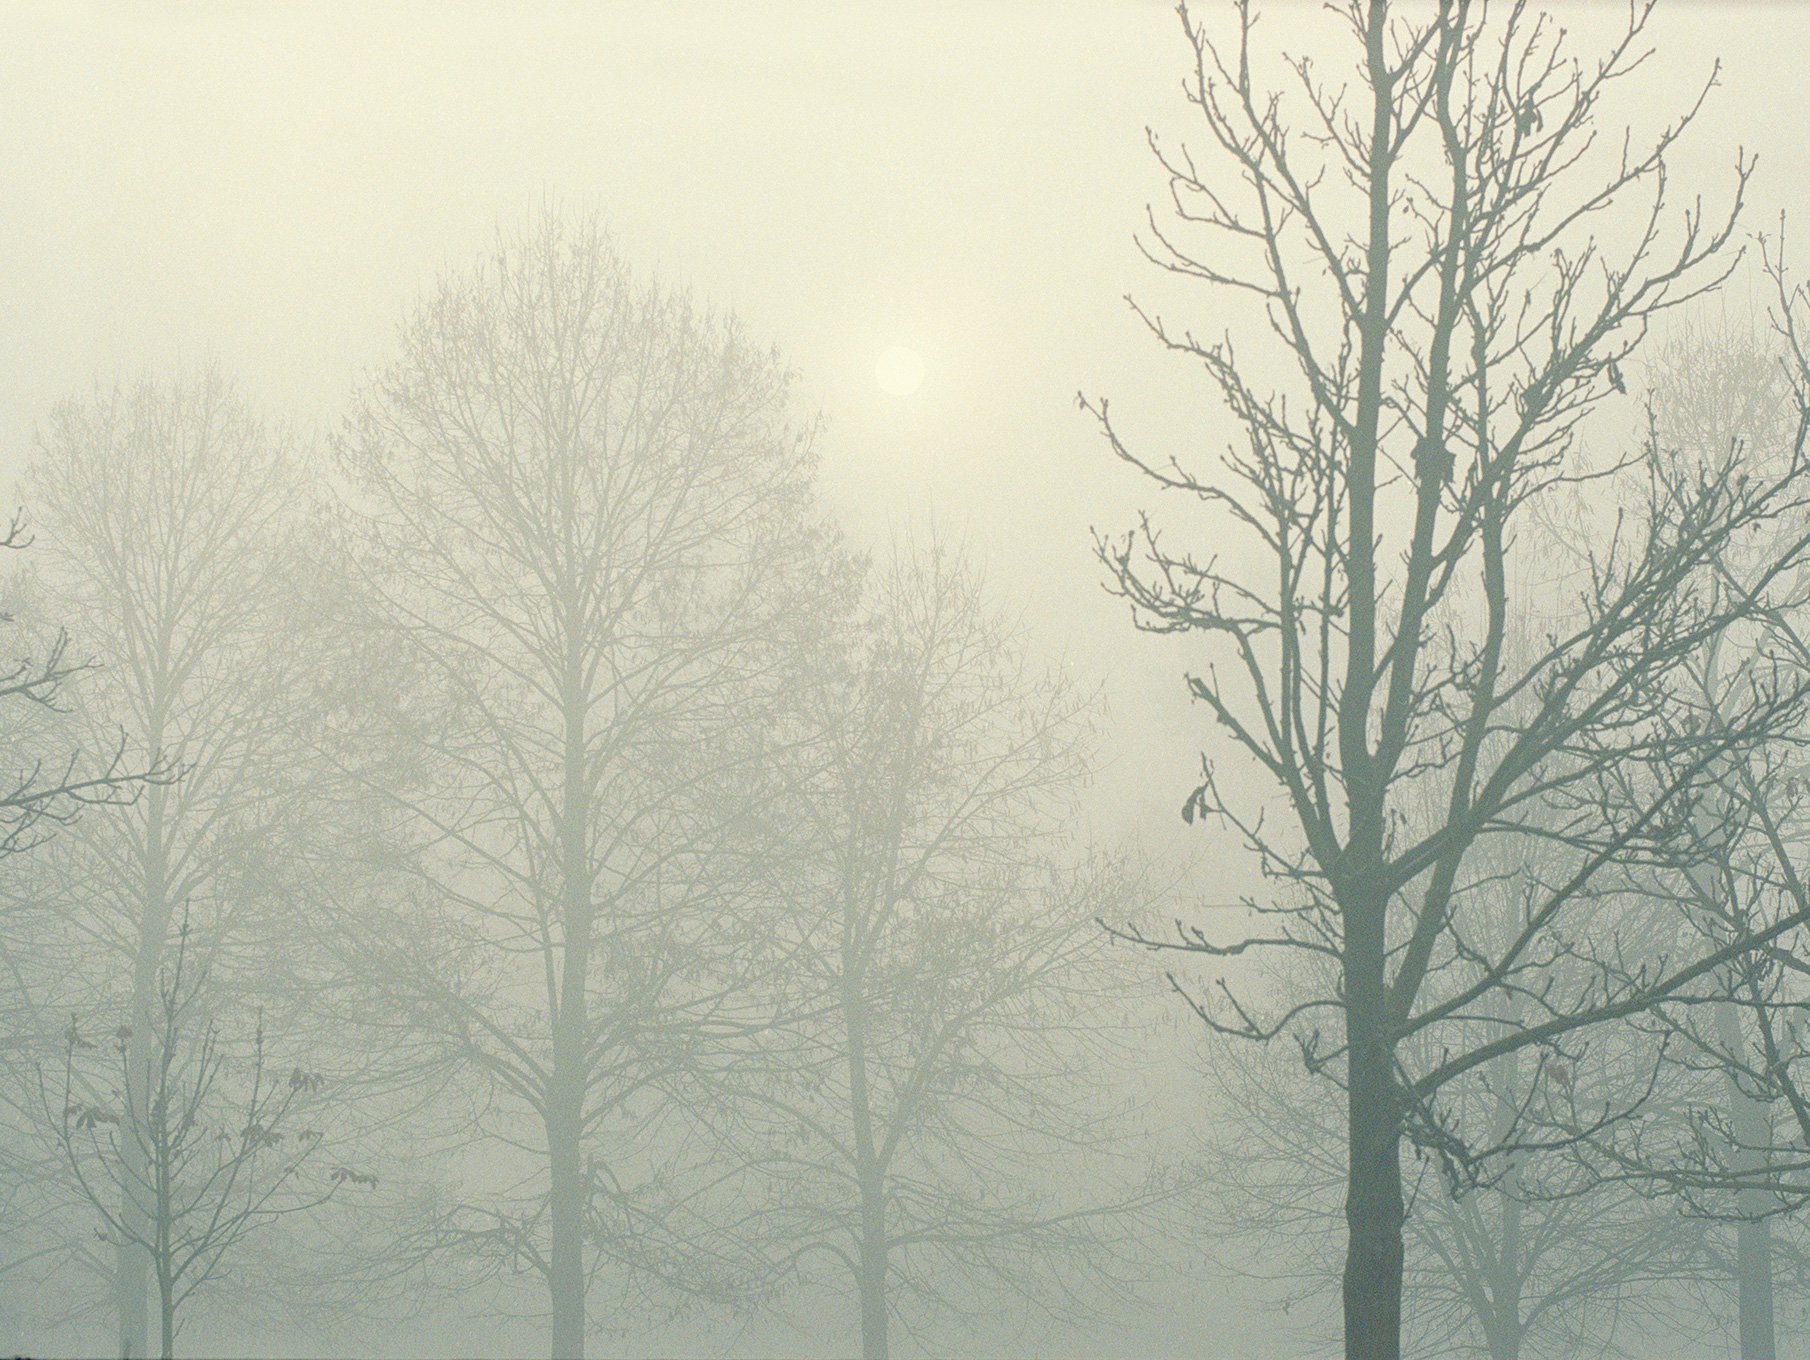   Morning mist, November 2019  